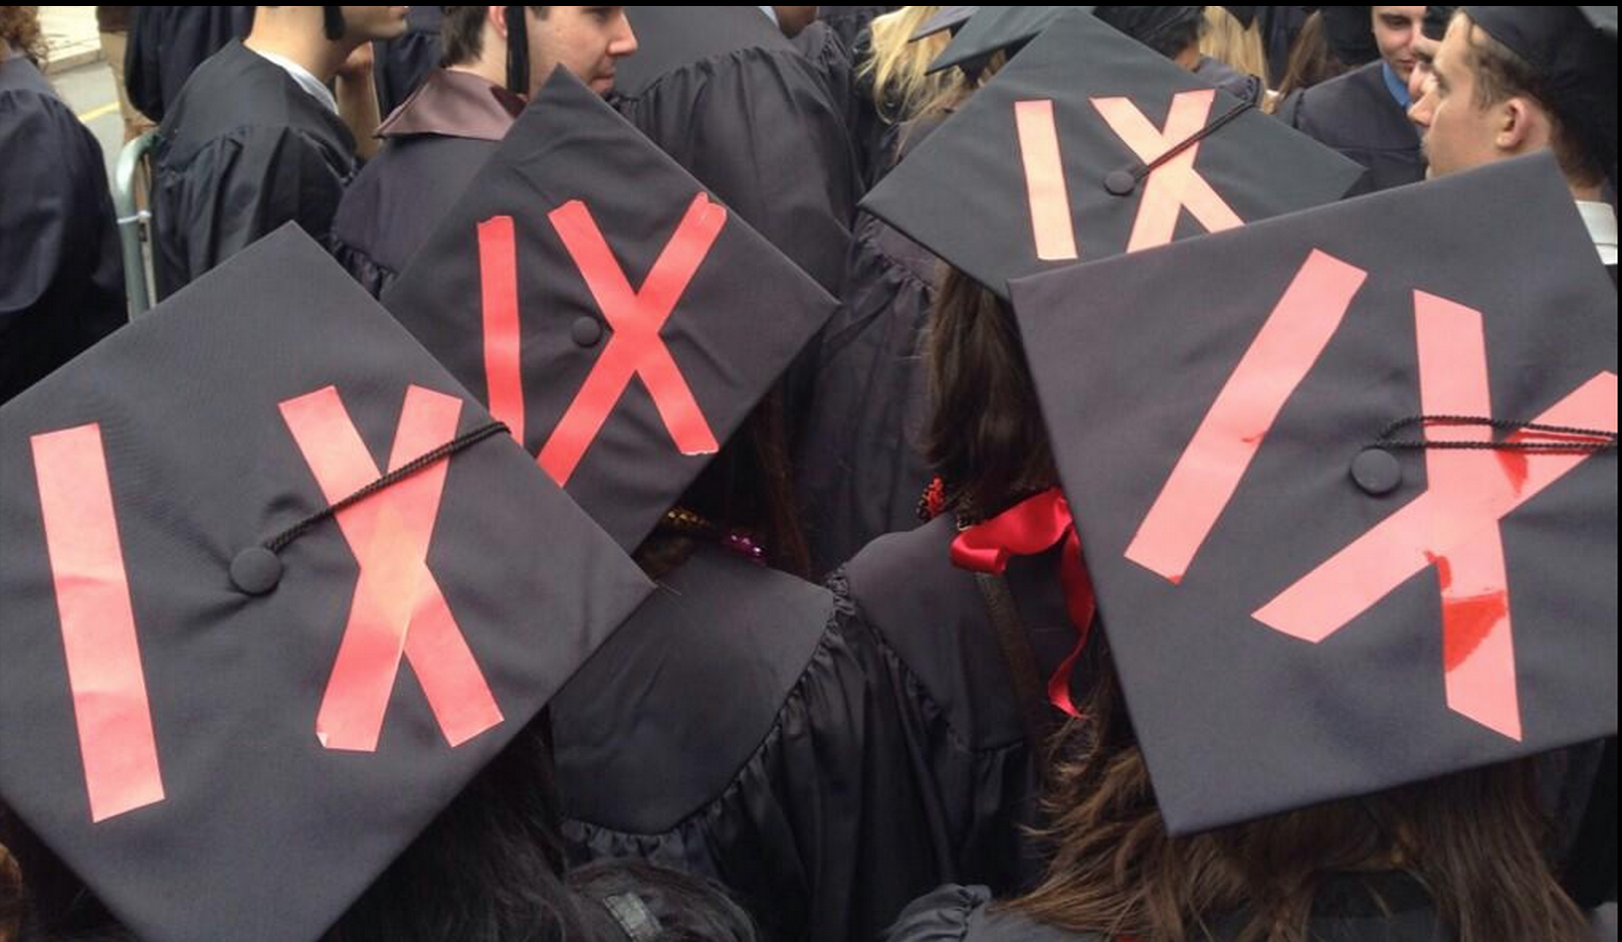 IX graduation hats